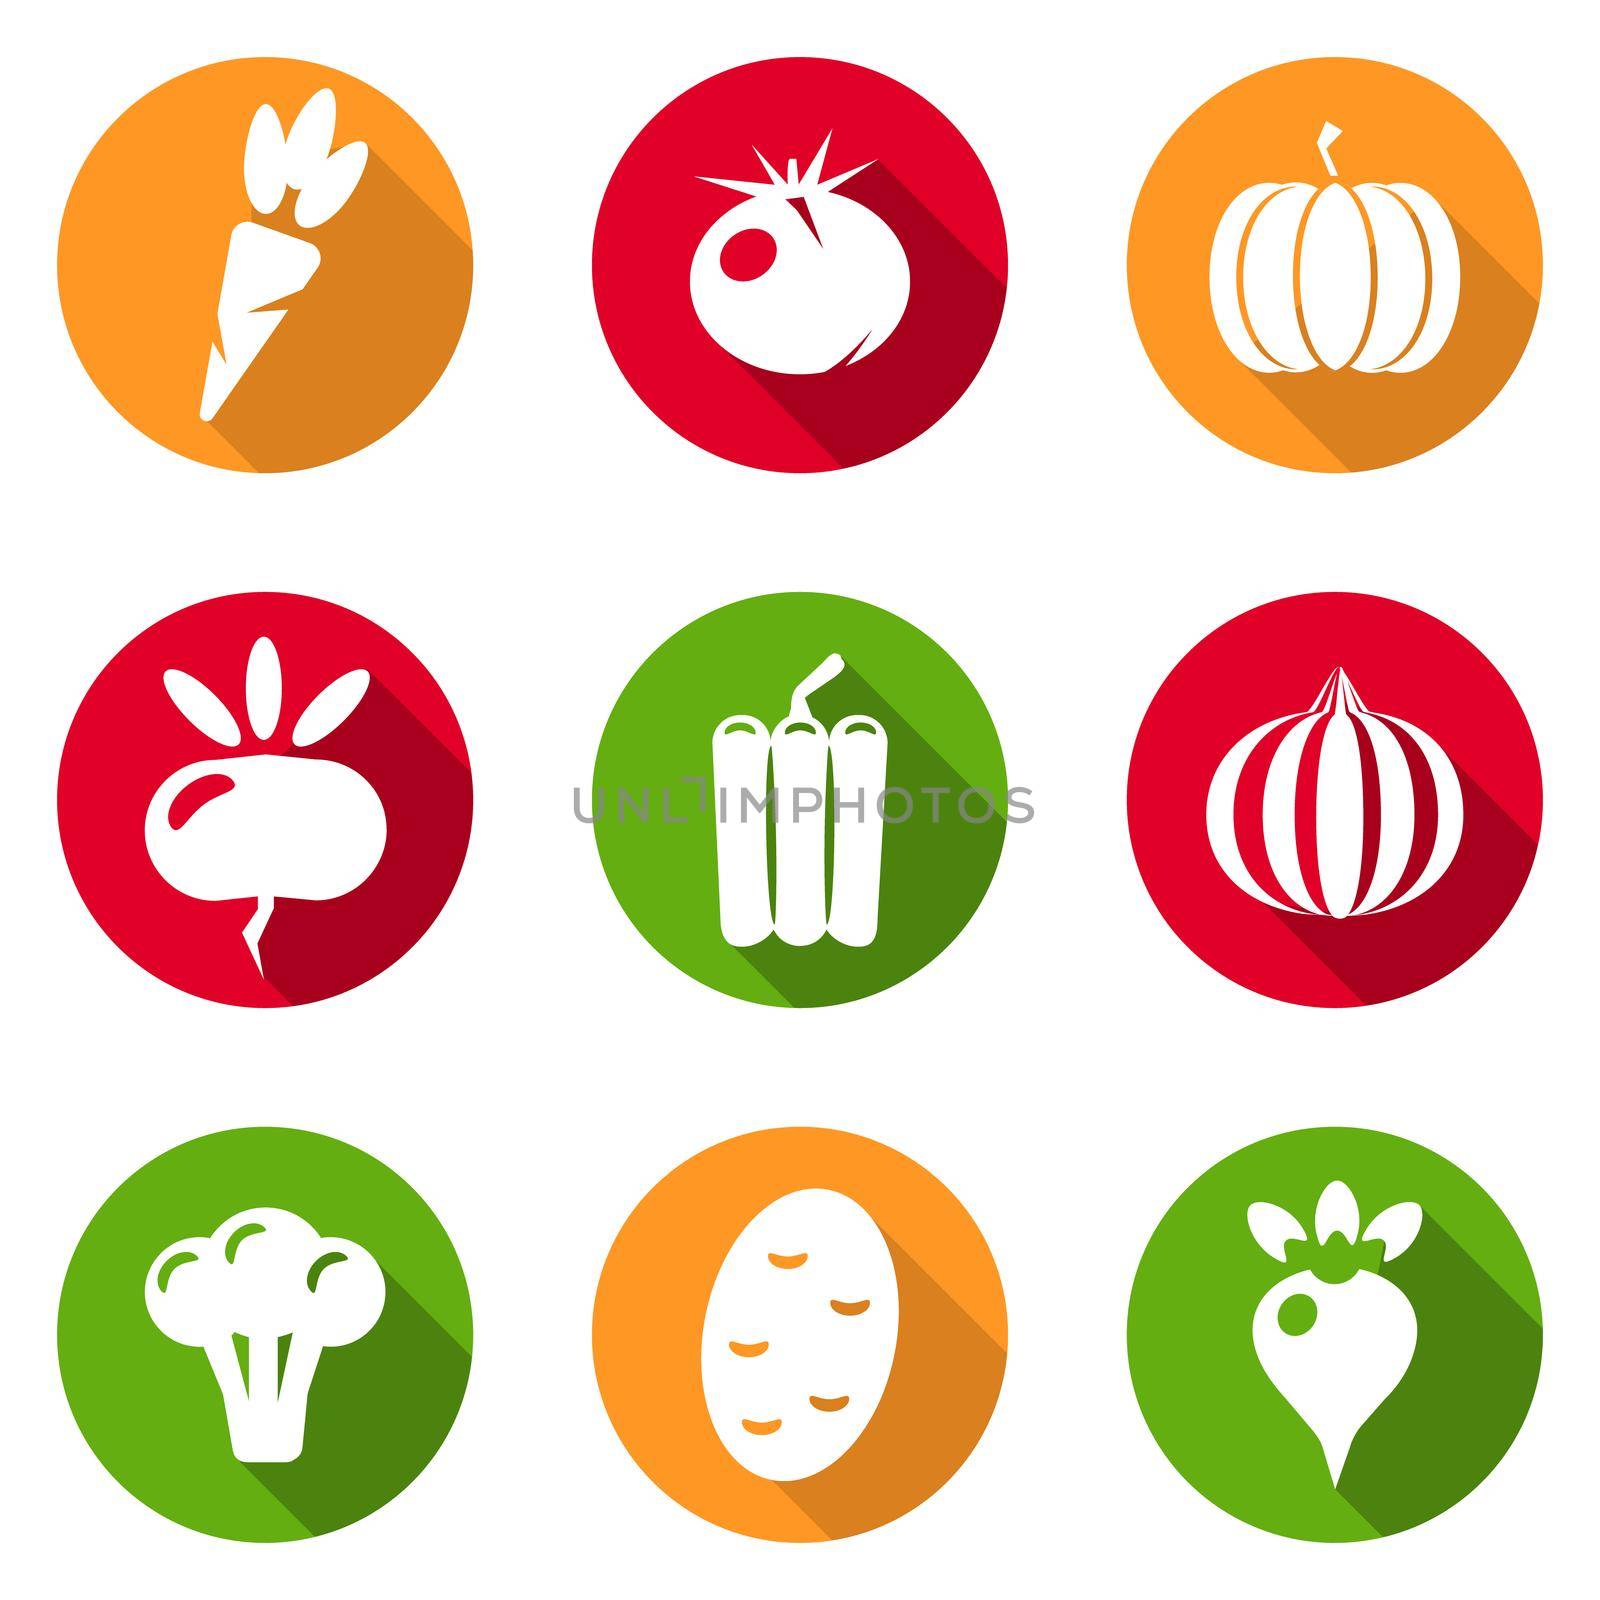 Vegetables icons flat set isolated on white background illustration